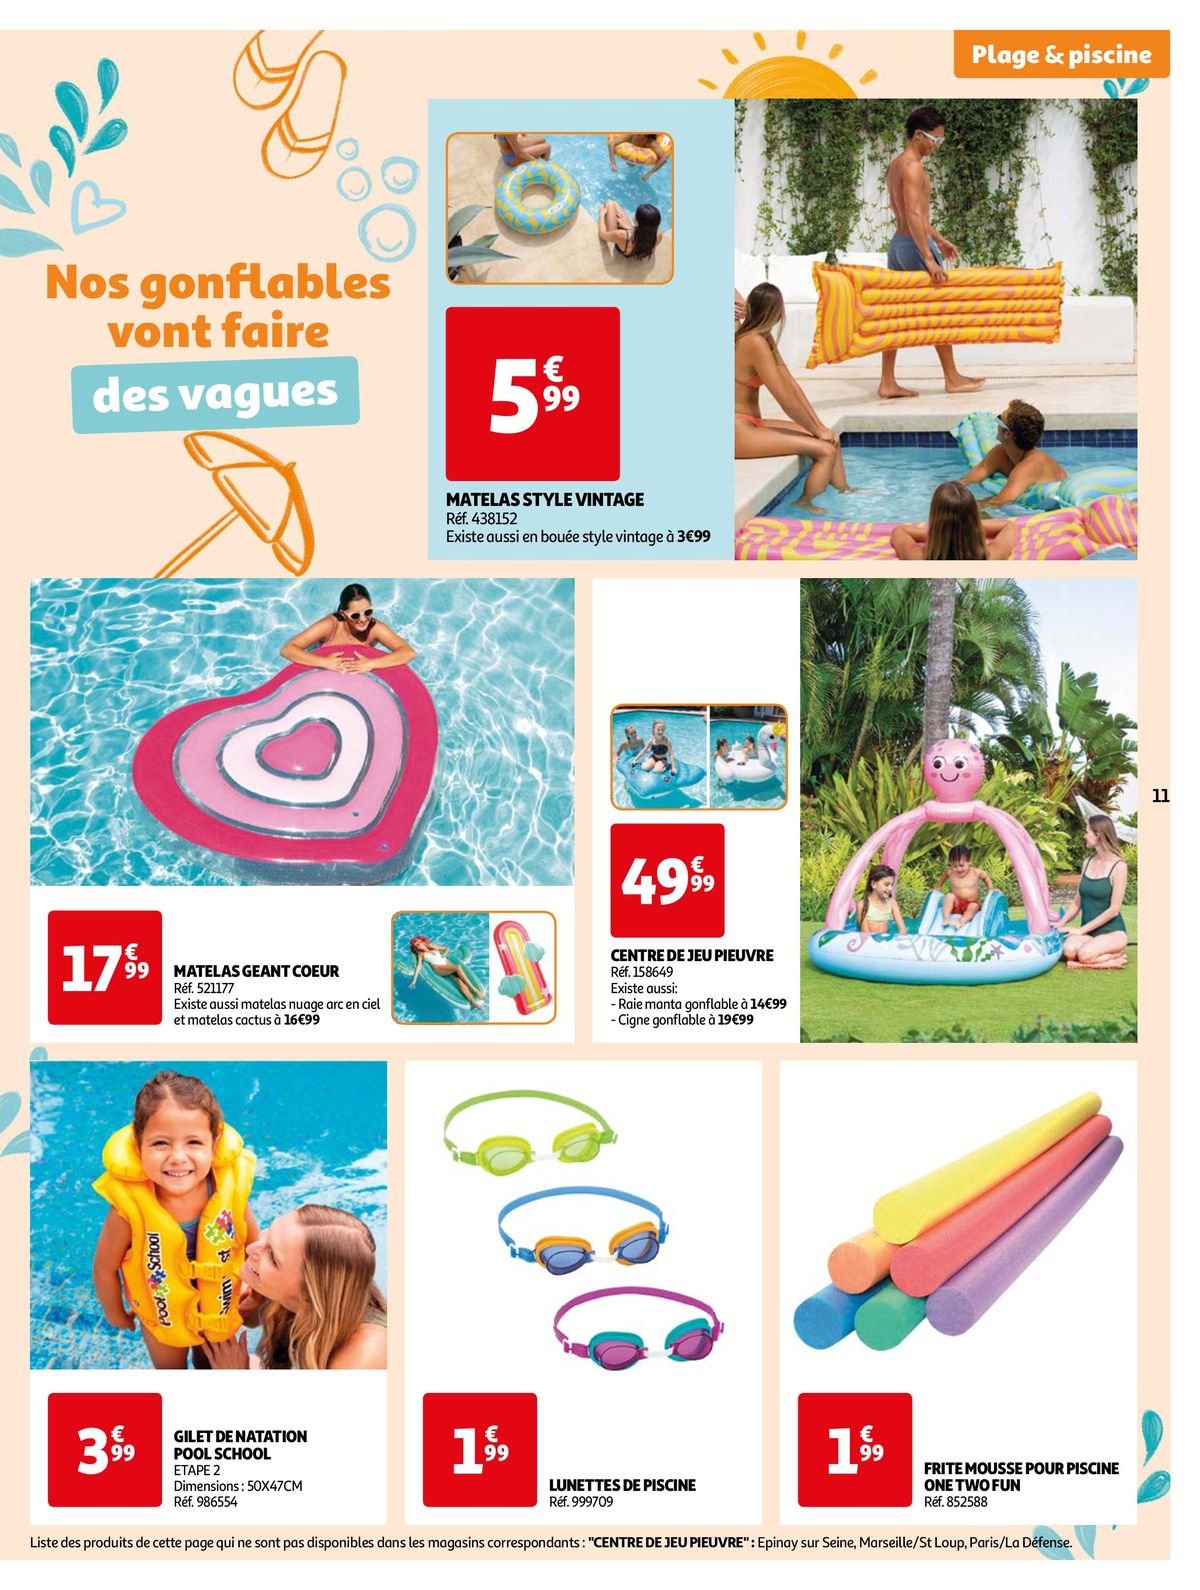 Catalogue Nos exclusivités Summer pour s'amuser tout l'été, page 00011